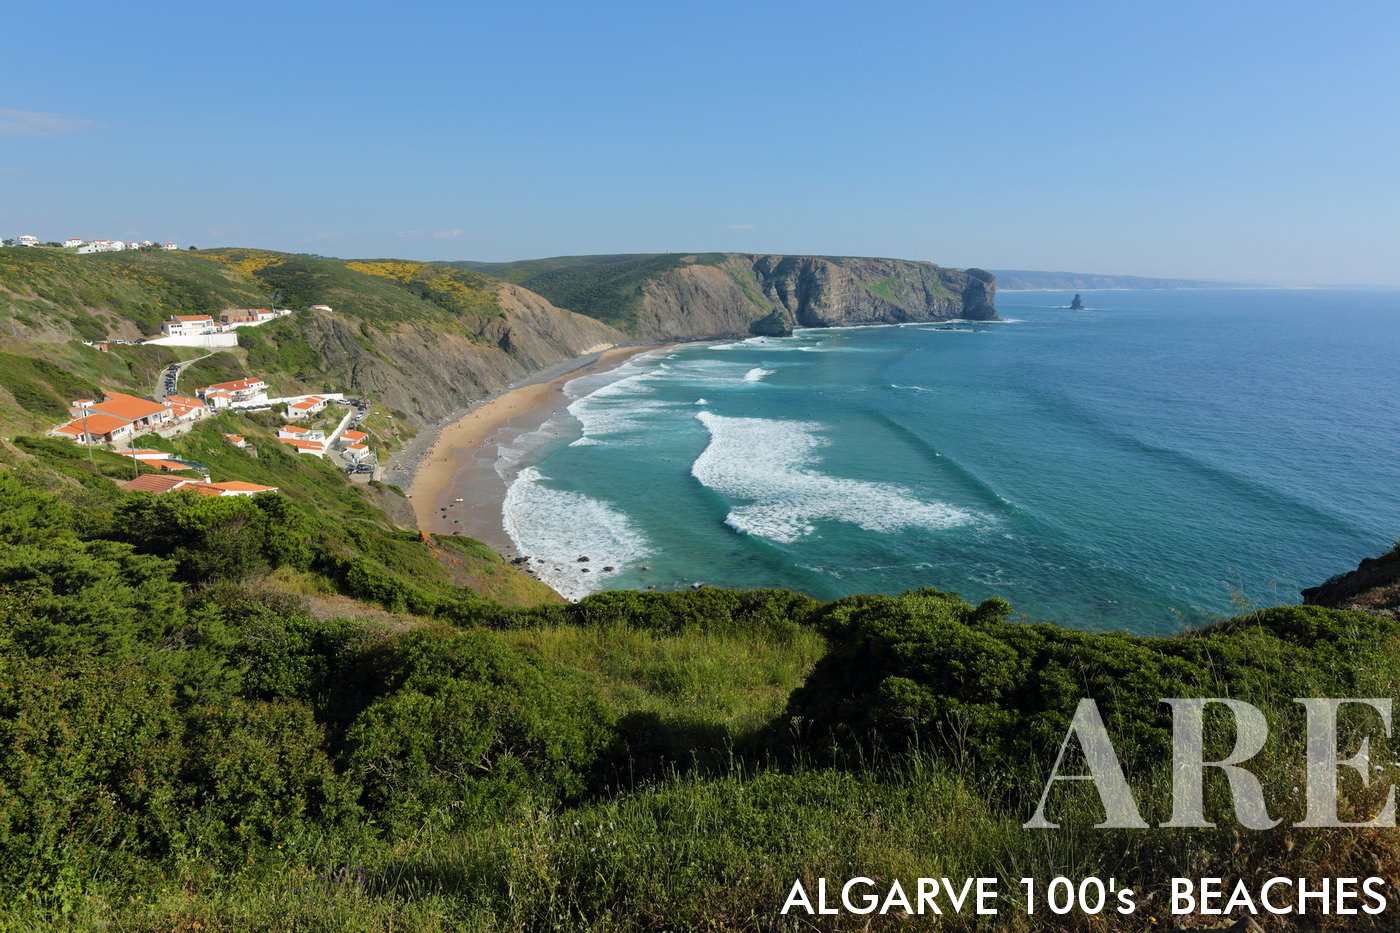 No Parque Natural do Sudoeste Alentejano e Costa Vicentina, Portugal, a Praia da Arrifana surge como um popular local de surf. Uma visão de norte a sul do topo das falésias revela a beleza deste cenário natural.